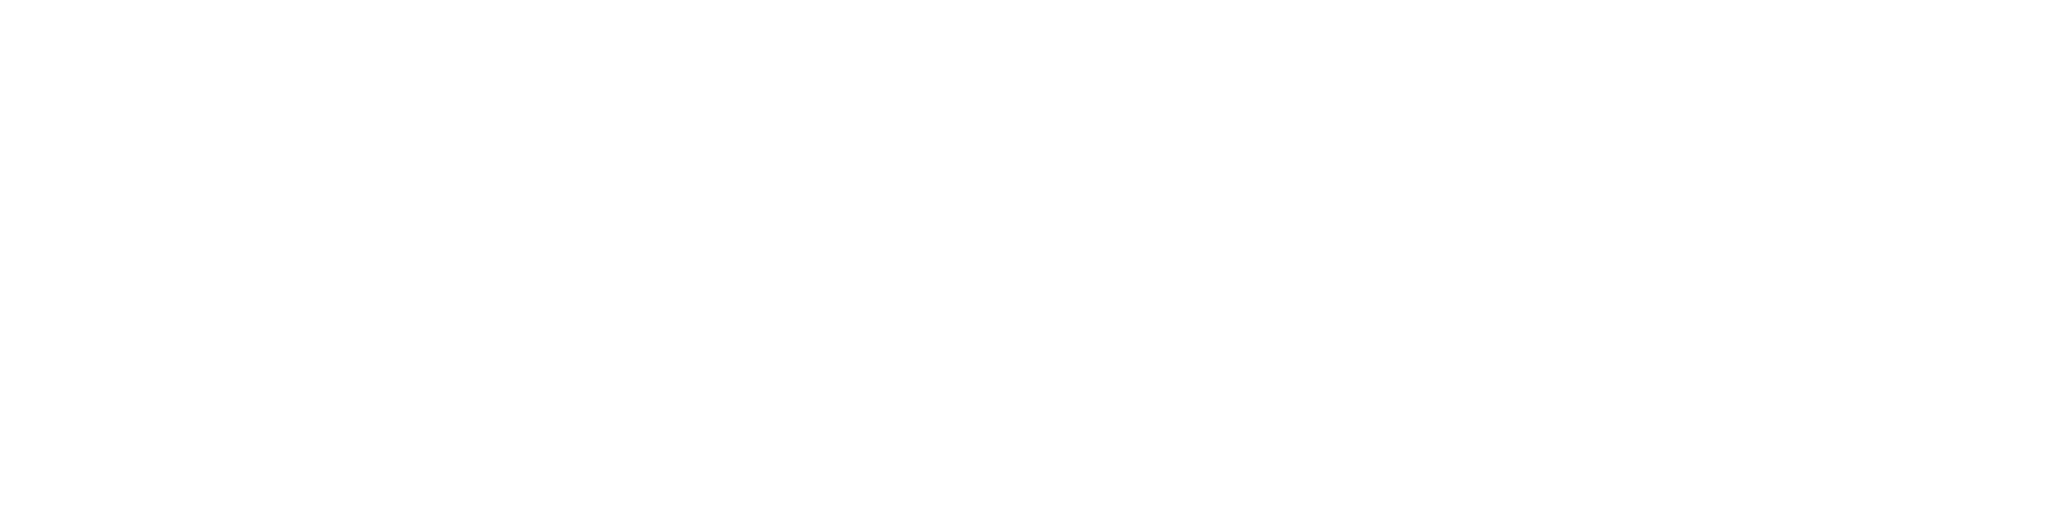 Skale Logo White